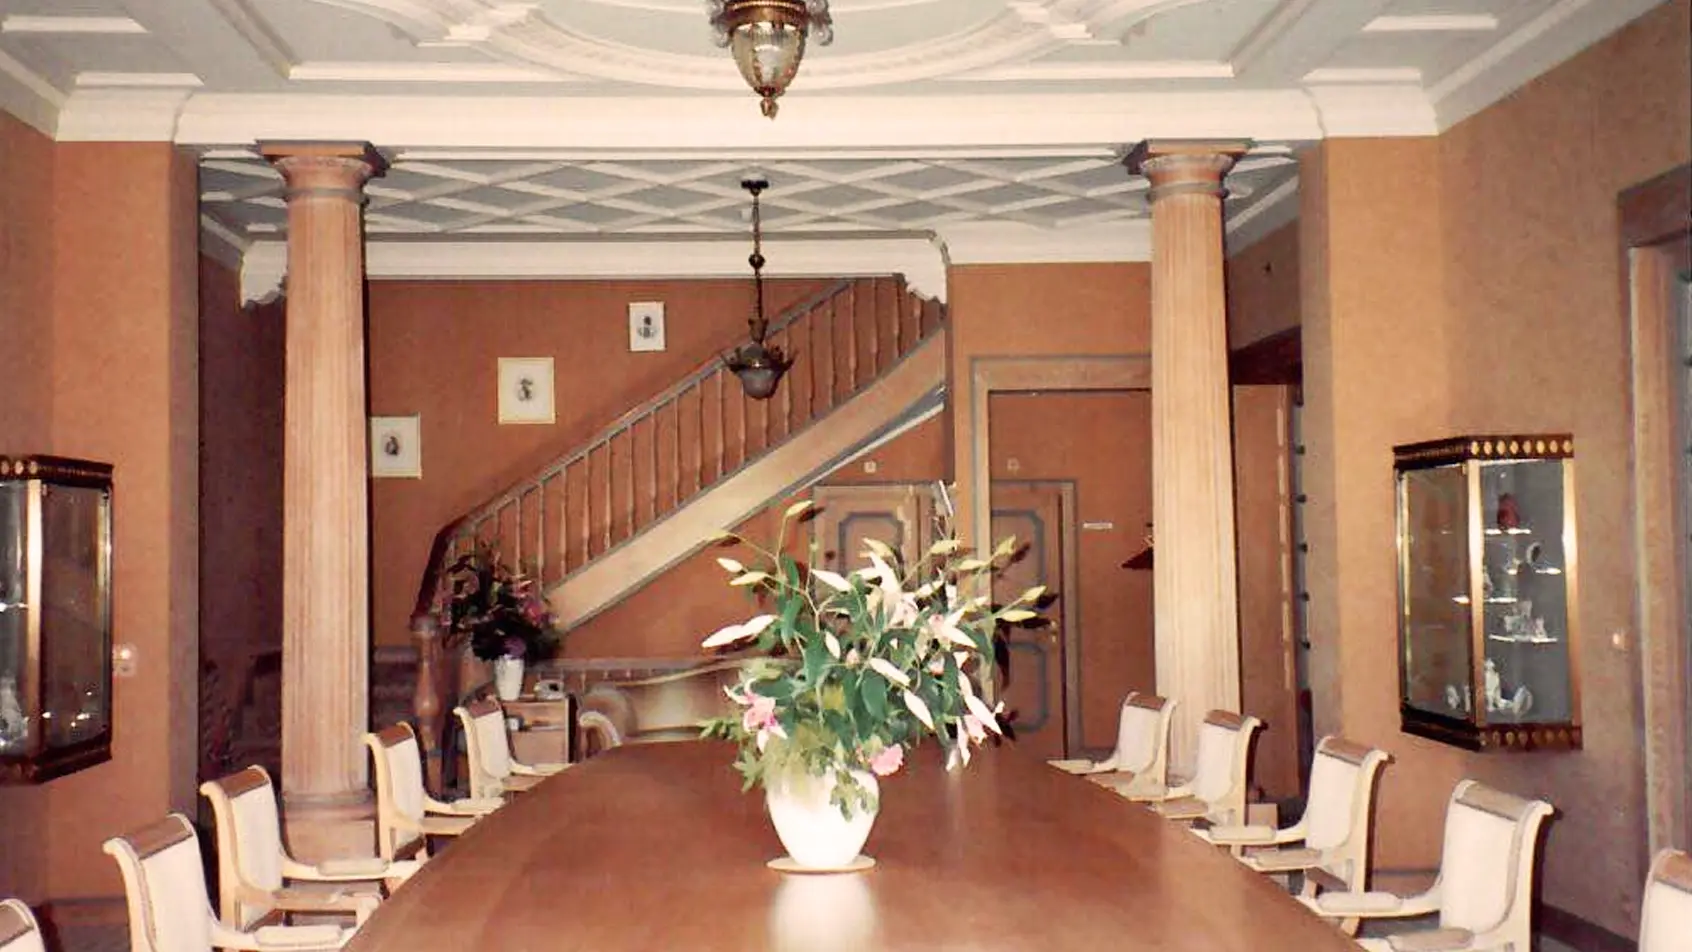 1980 wurde die Villa Ernst umgebaut, um das neue Jacobs Suchard Museum zu beherbergen. Im Zuge dieser Arbeiten wurde der einzigartige Charakter der Villa Ernst zugunsten eines konventionelleren, eleganteren Erscheinungsbildes weitgehend verdrängt.